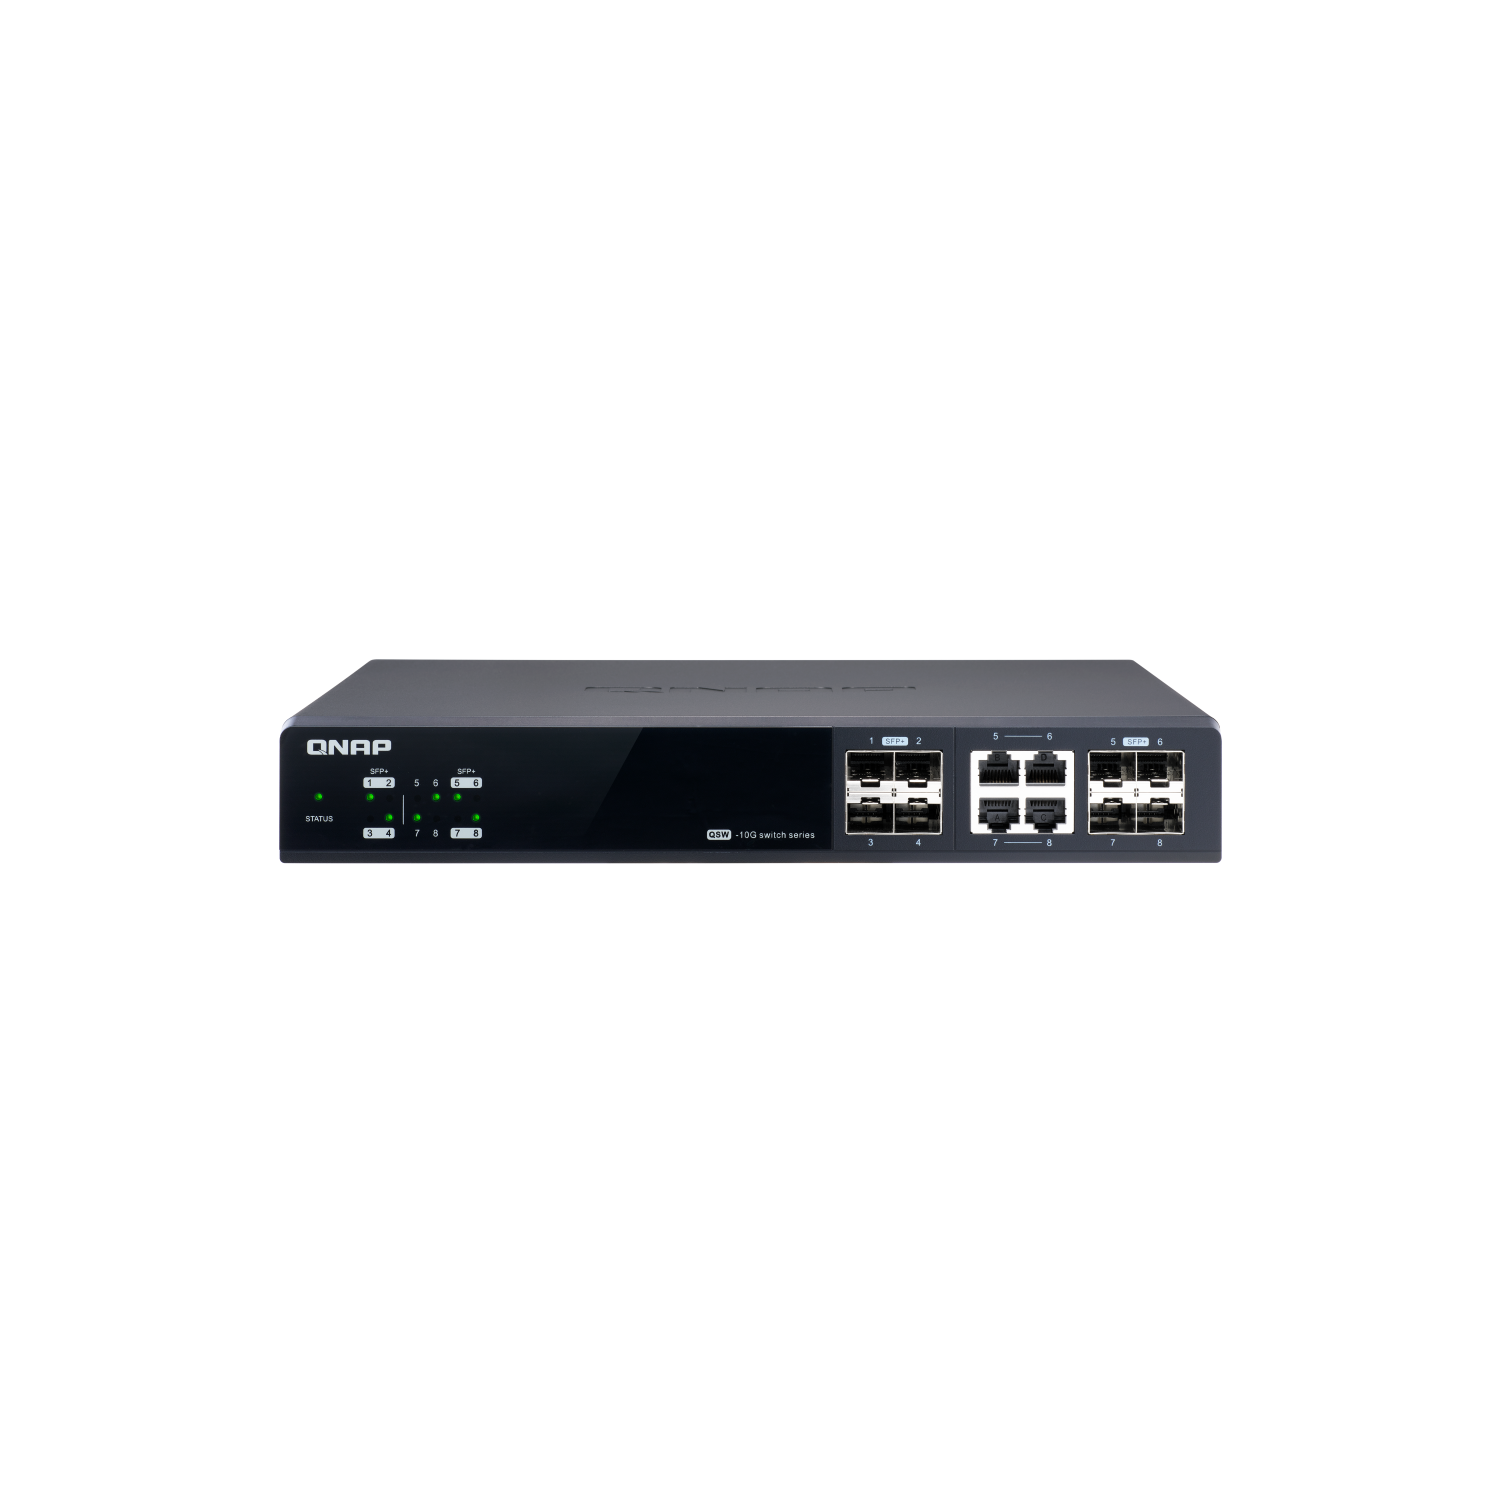 QNAP 8-Port Managed Gigabit Ethernet Switch (QSW-M804-4C-US)